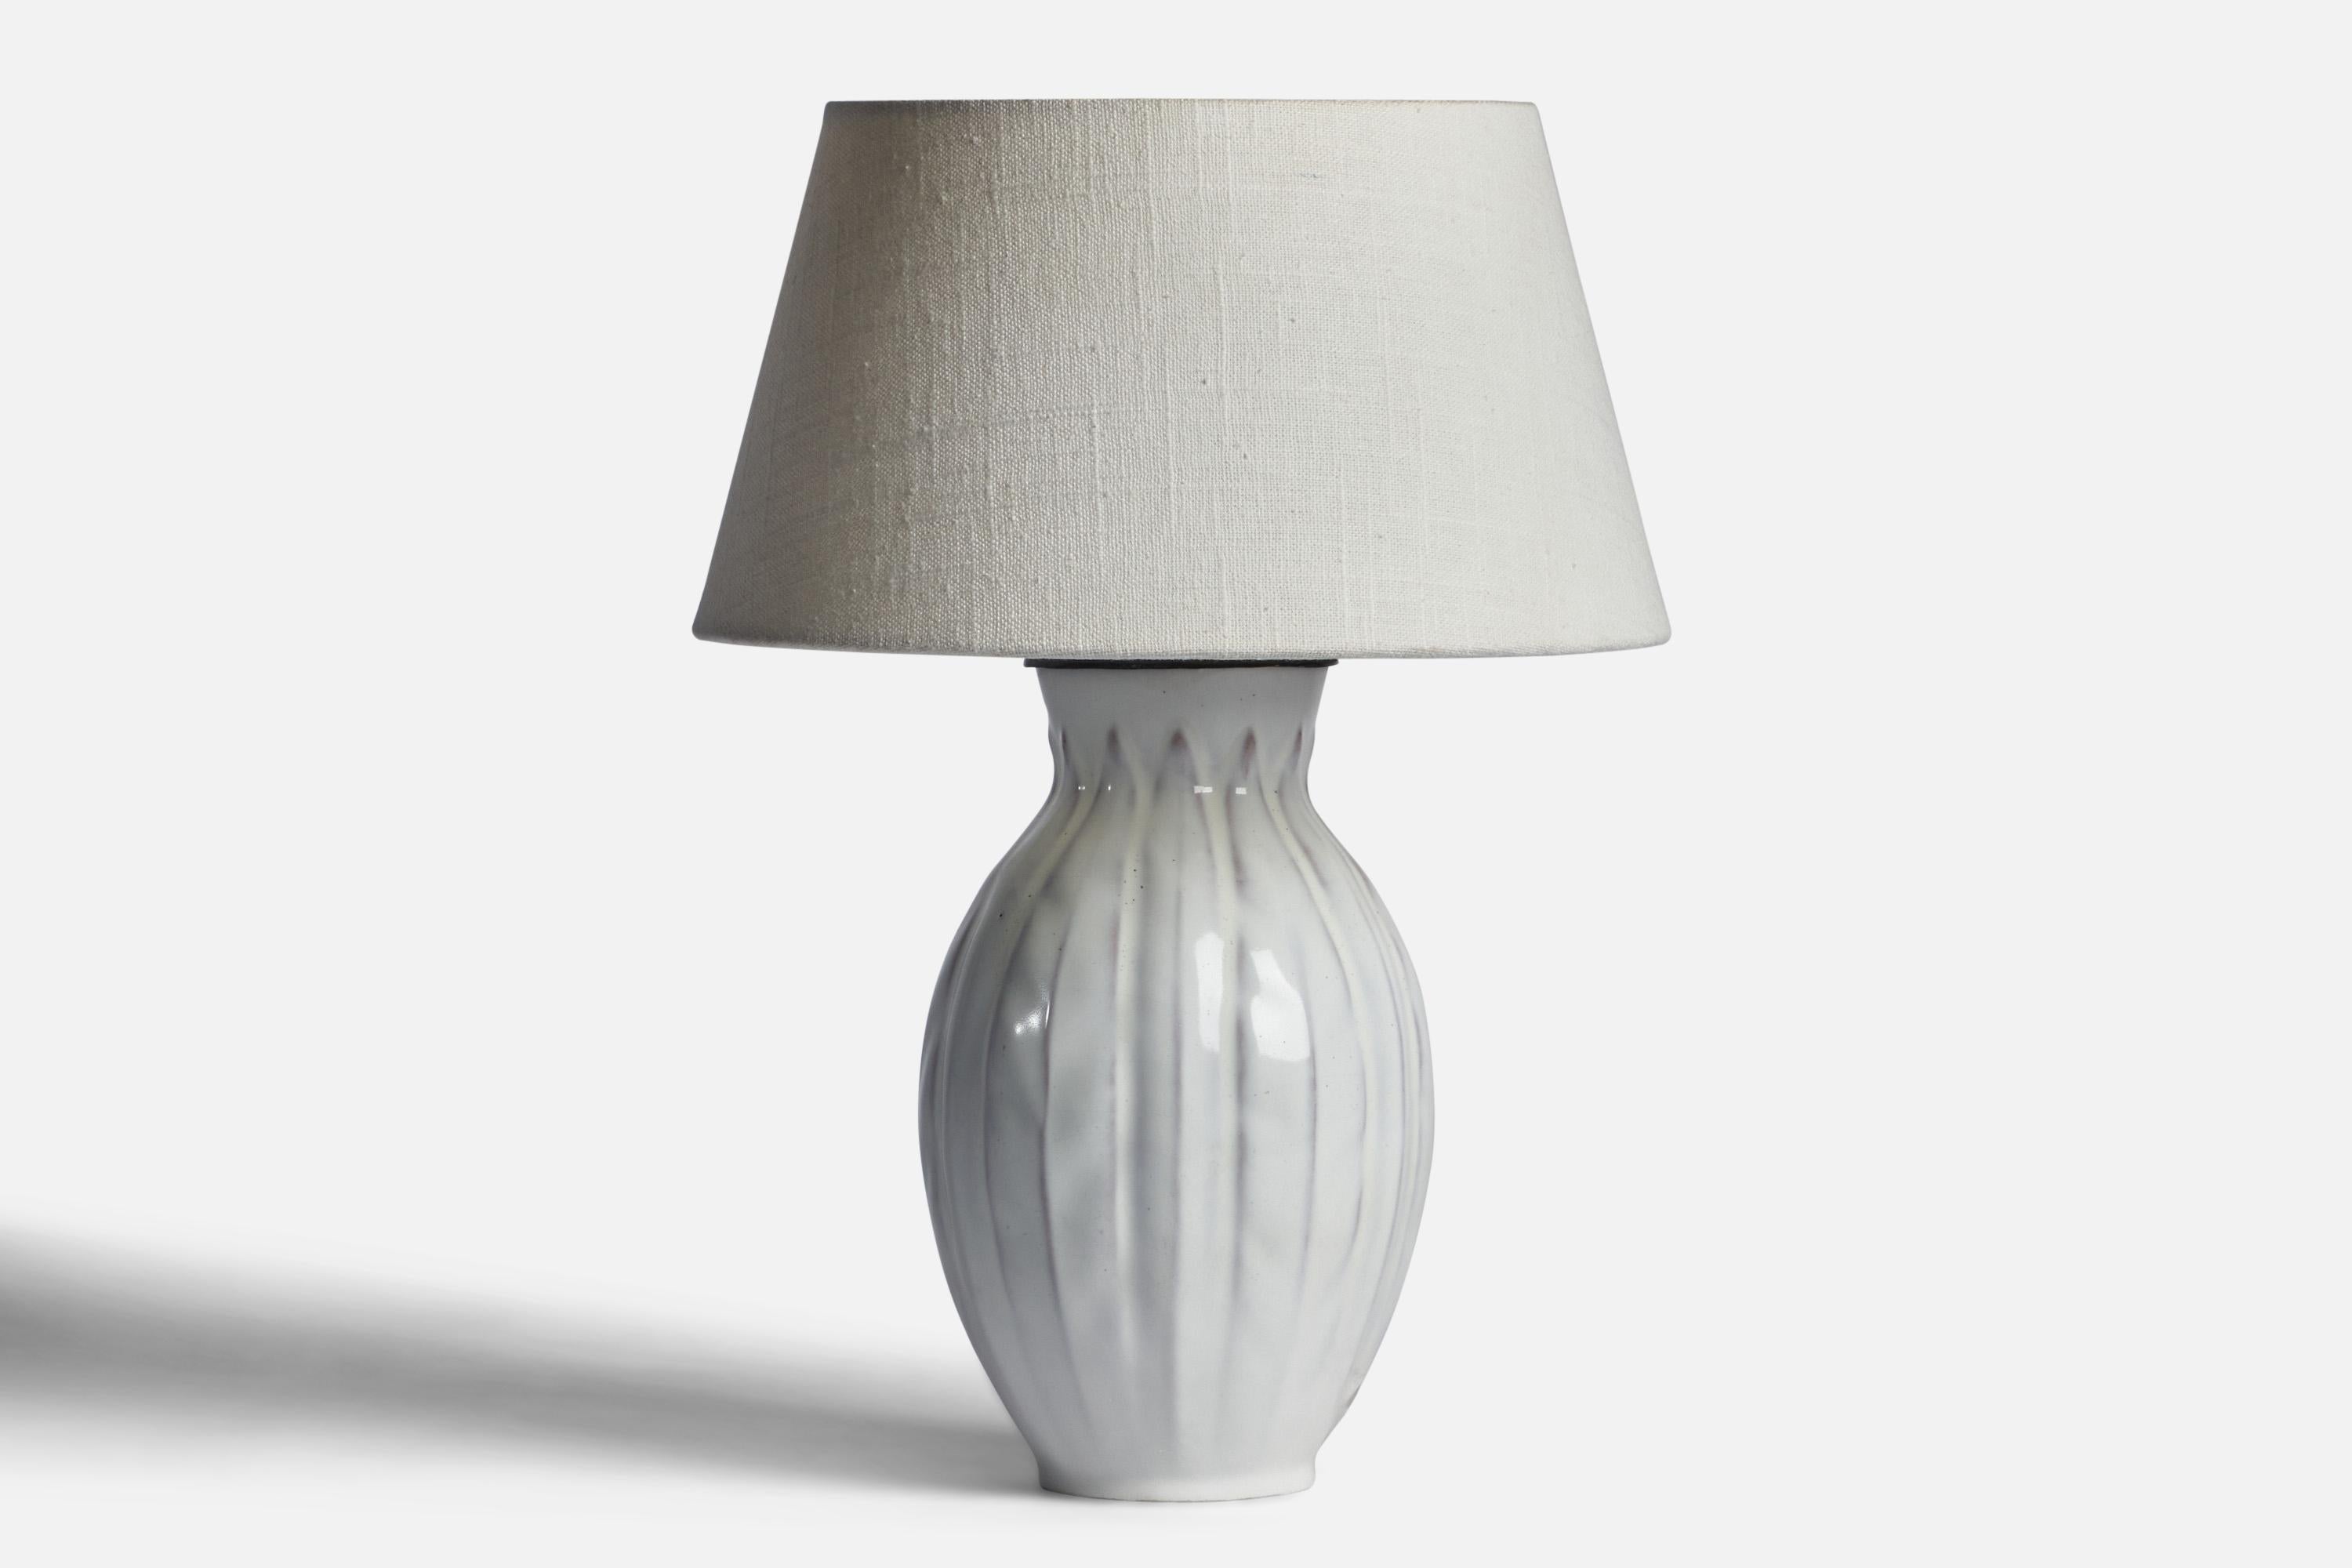 Lampe de table en faïence à glaçure blanche conçue par Anna-Lisa Thomson et produite par Upsala Ekeby, Suède, années 1930.

Dimensions de la lampe (pouces) : 11.15